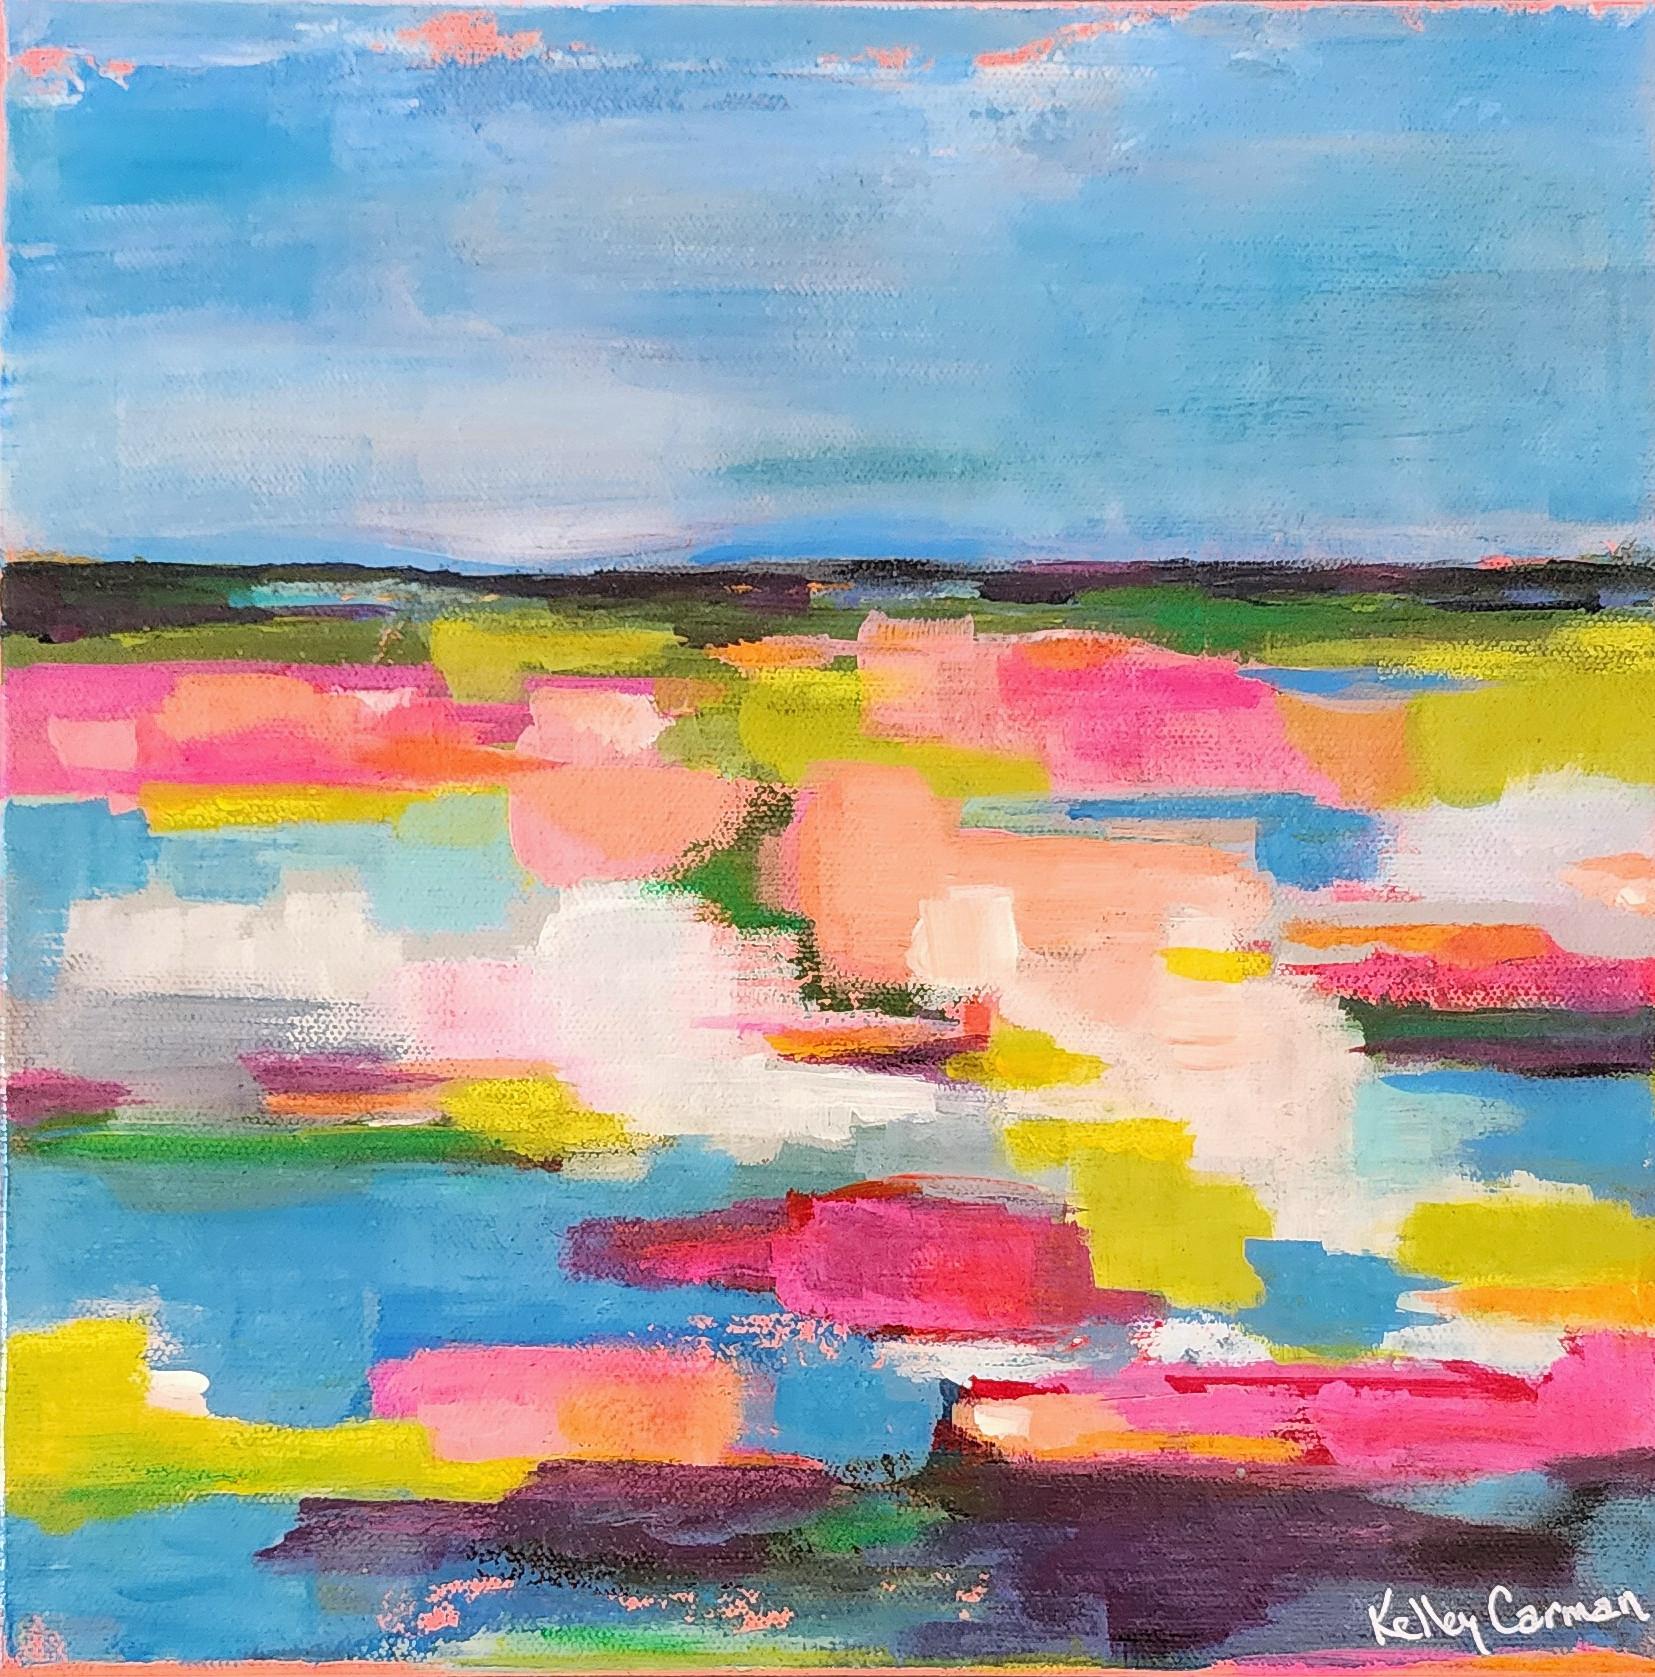 Kelley Carman Landscape Painting – Veränderung der Breitengrade (gestisch abstrakt, farbenfroh, blau, rosa, gelb, grün)